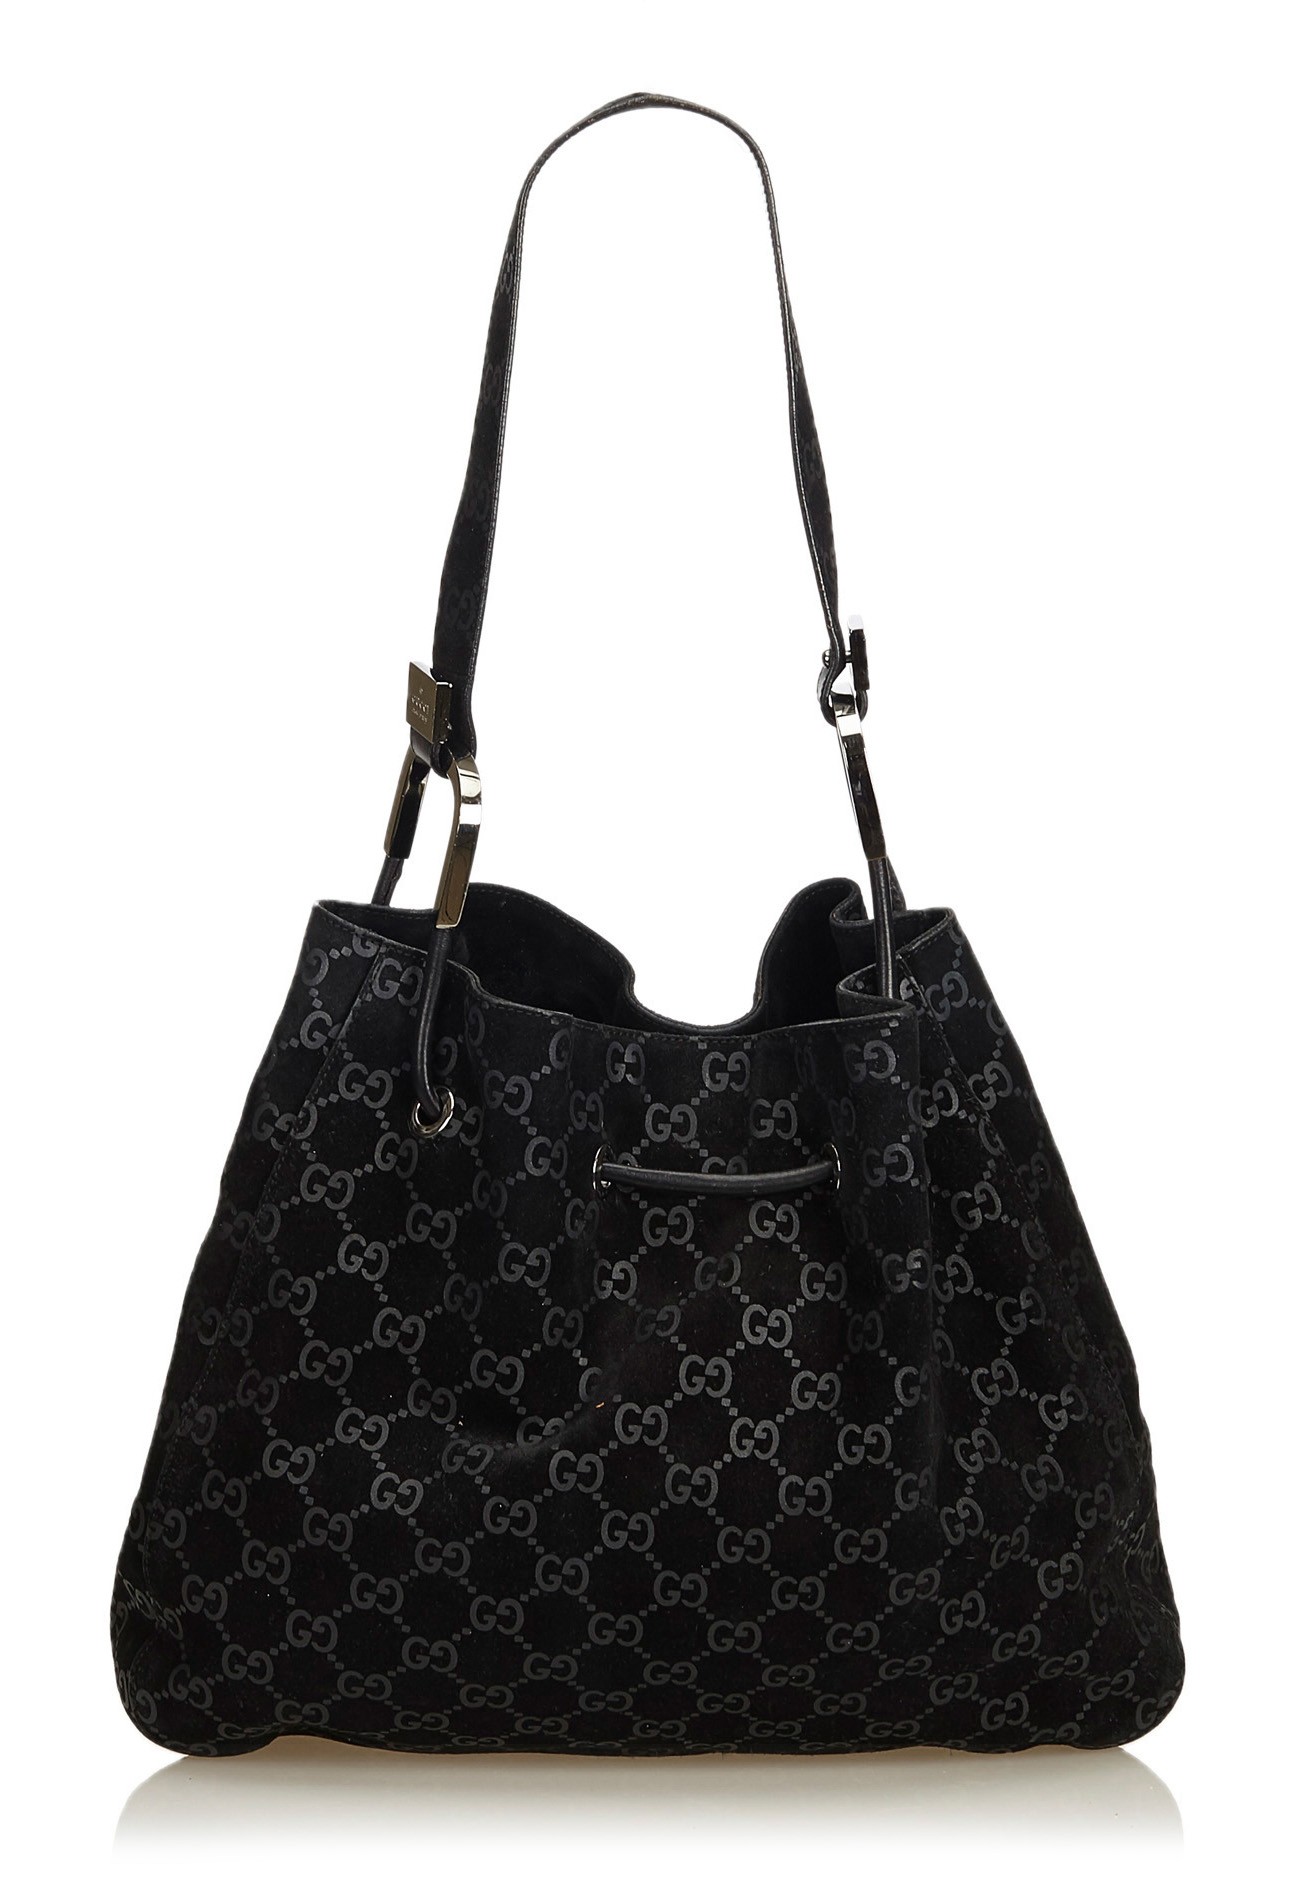 Gucci Vintage - GG Jacquard Tote Bag - Brown - Leather Handbag